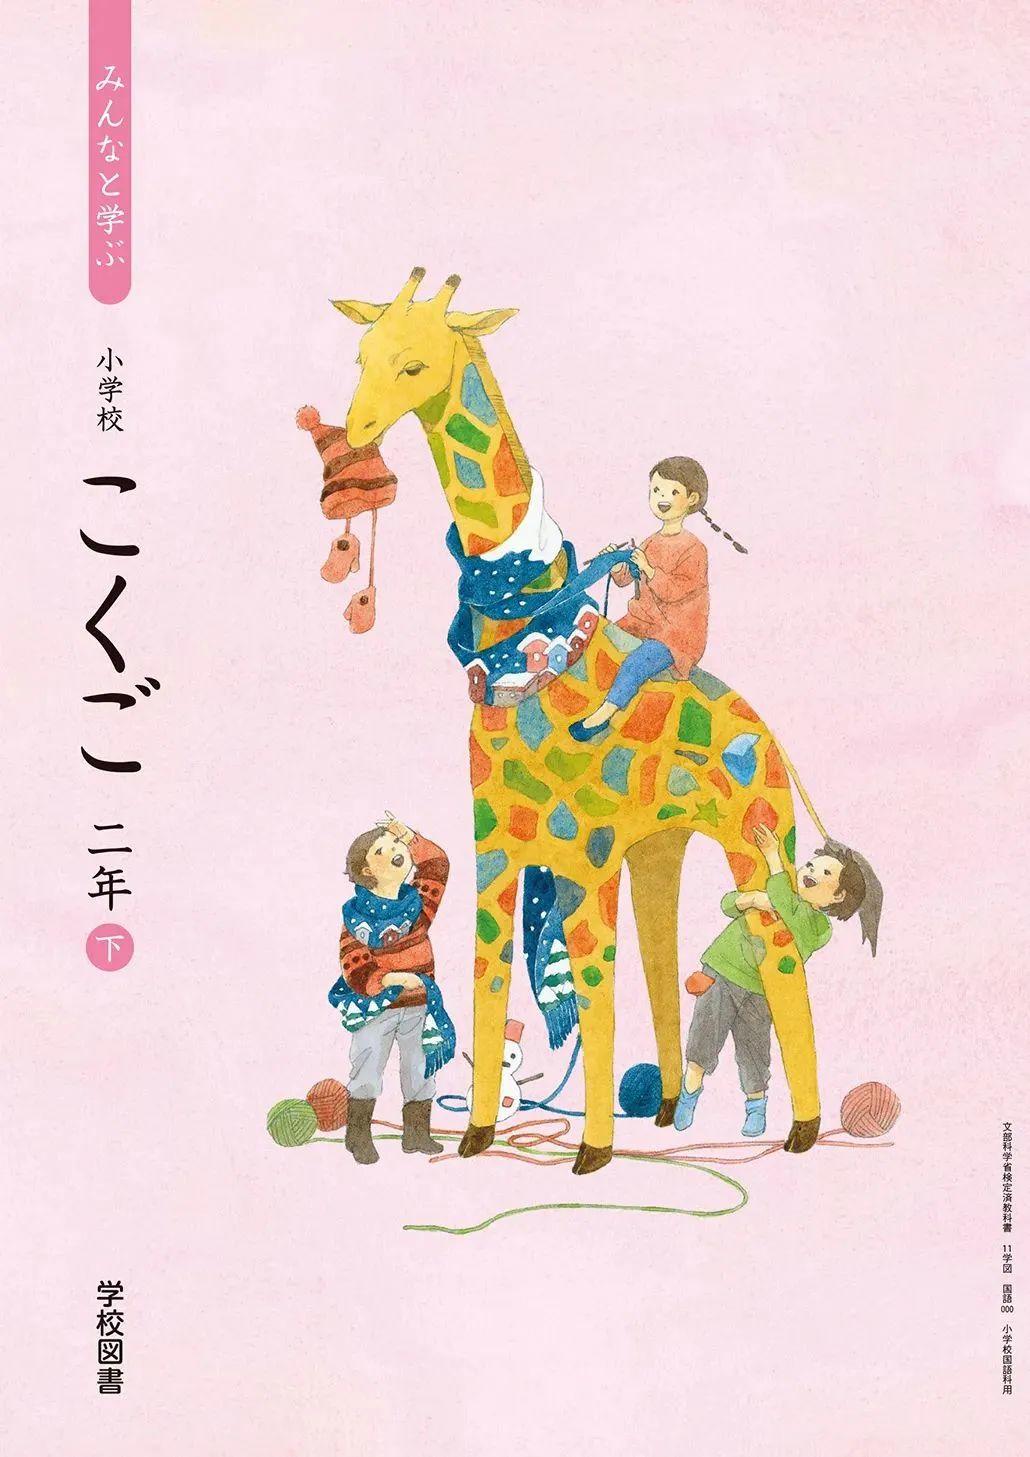 日本中小学生教科书封面设计,太美了吧! 第9张